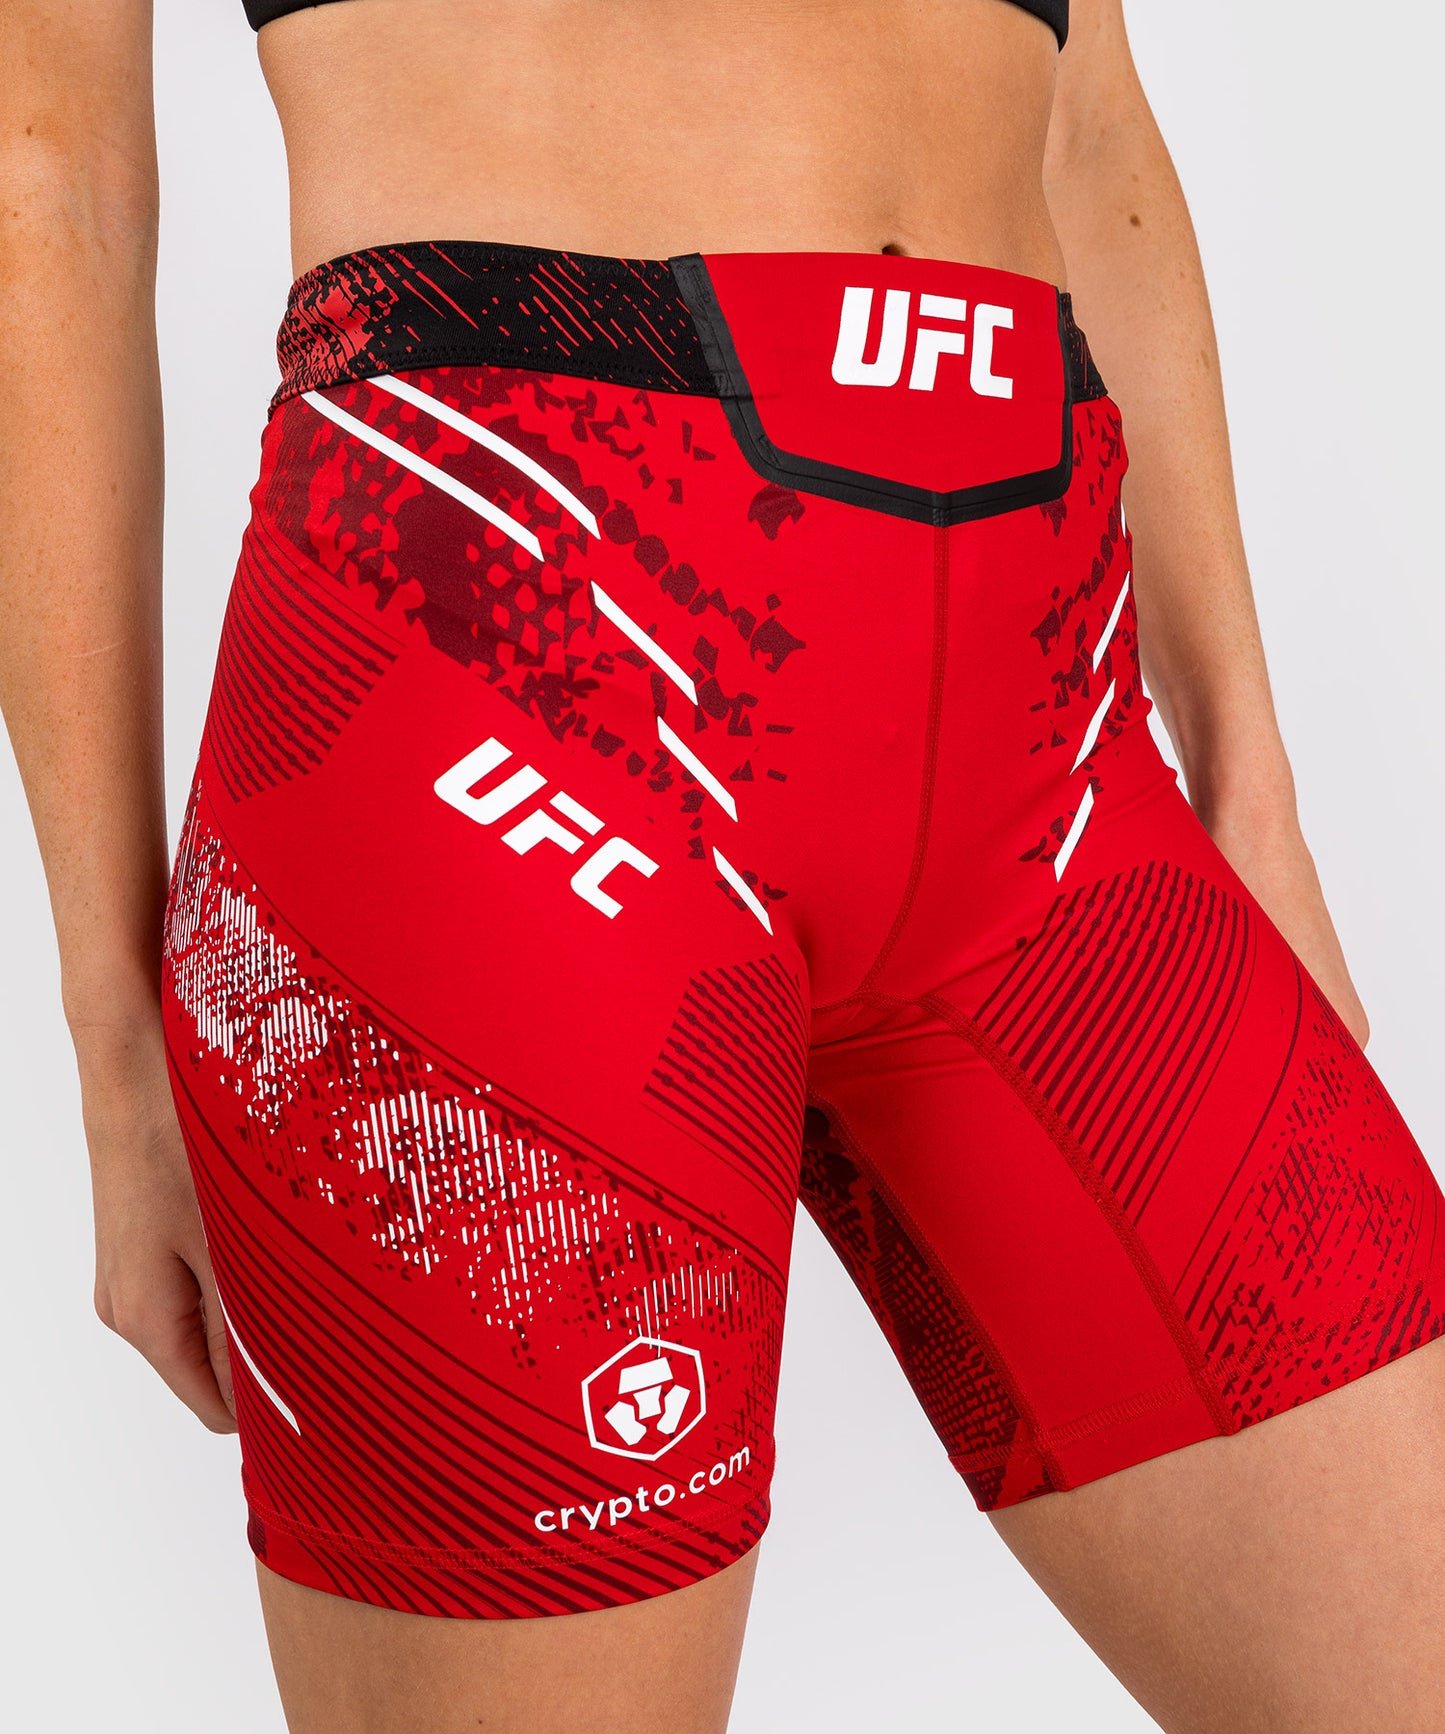 UFC Adrenaline by Venum Authentic Fight Night Vale Tudo Short für Frauen - Lange Passform - Rot